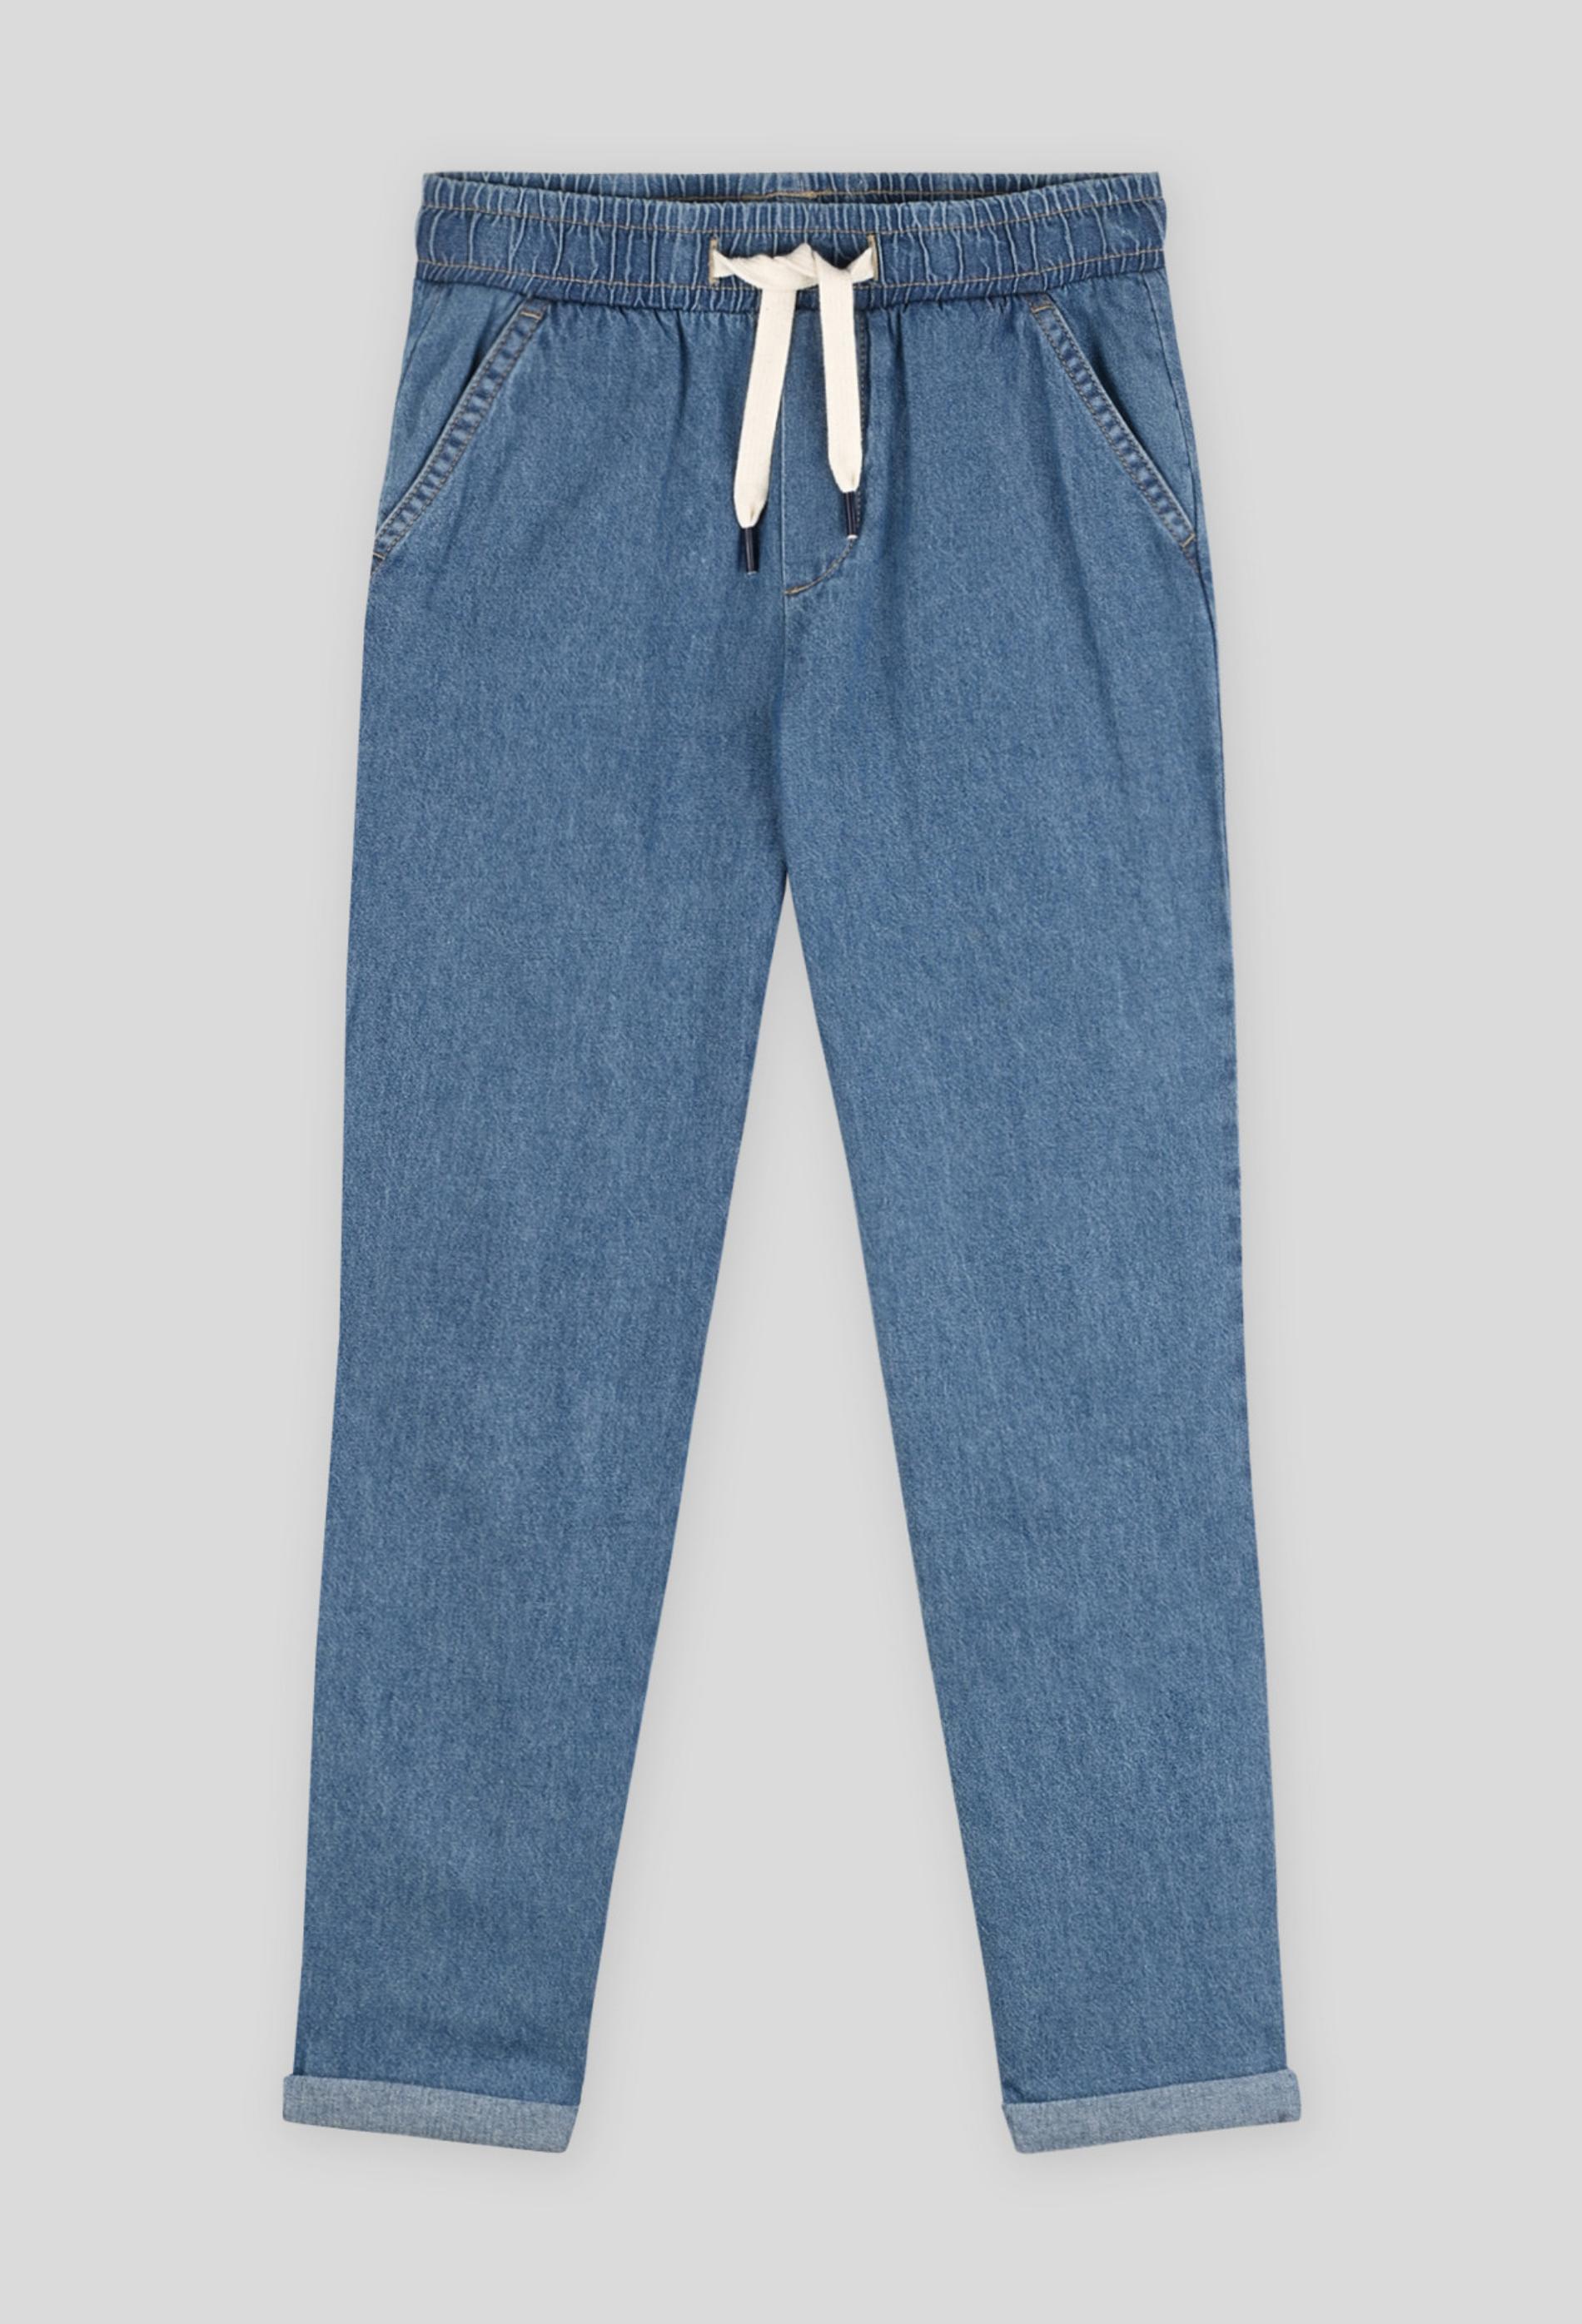 Pantalon droit confort avec cordon à la taille, certifié OEKO-TEX 3 ans bleu clair